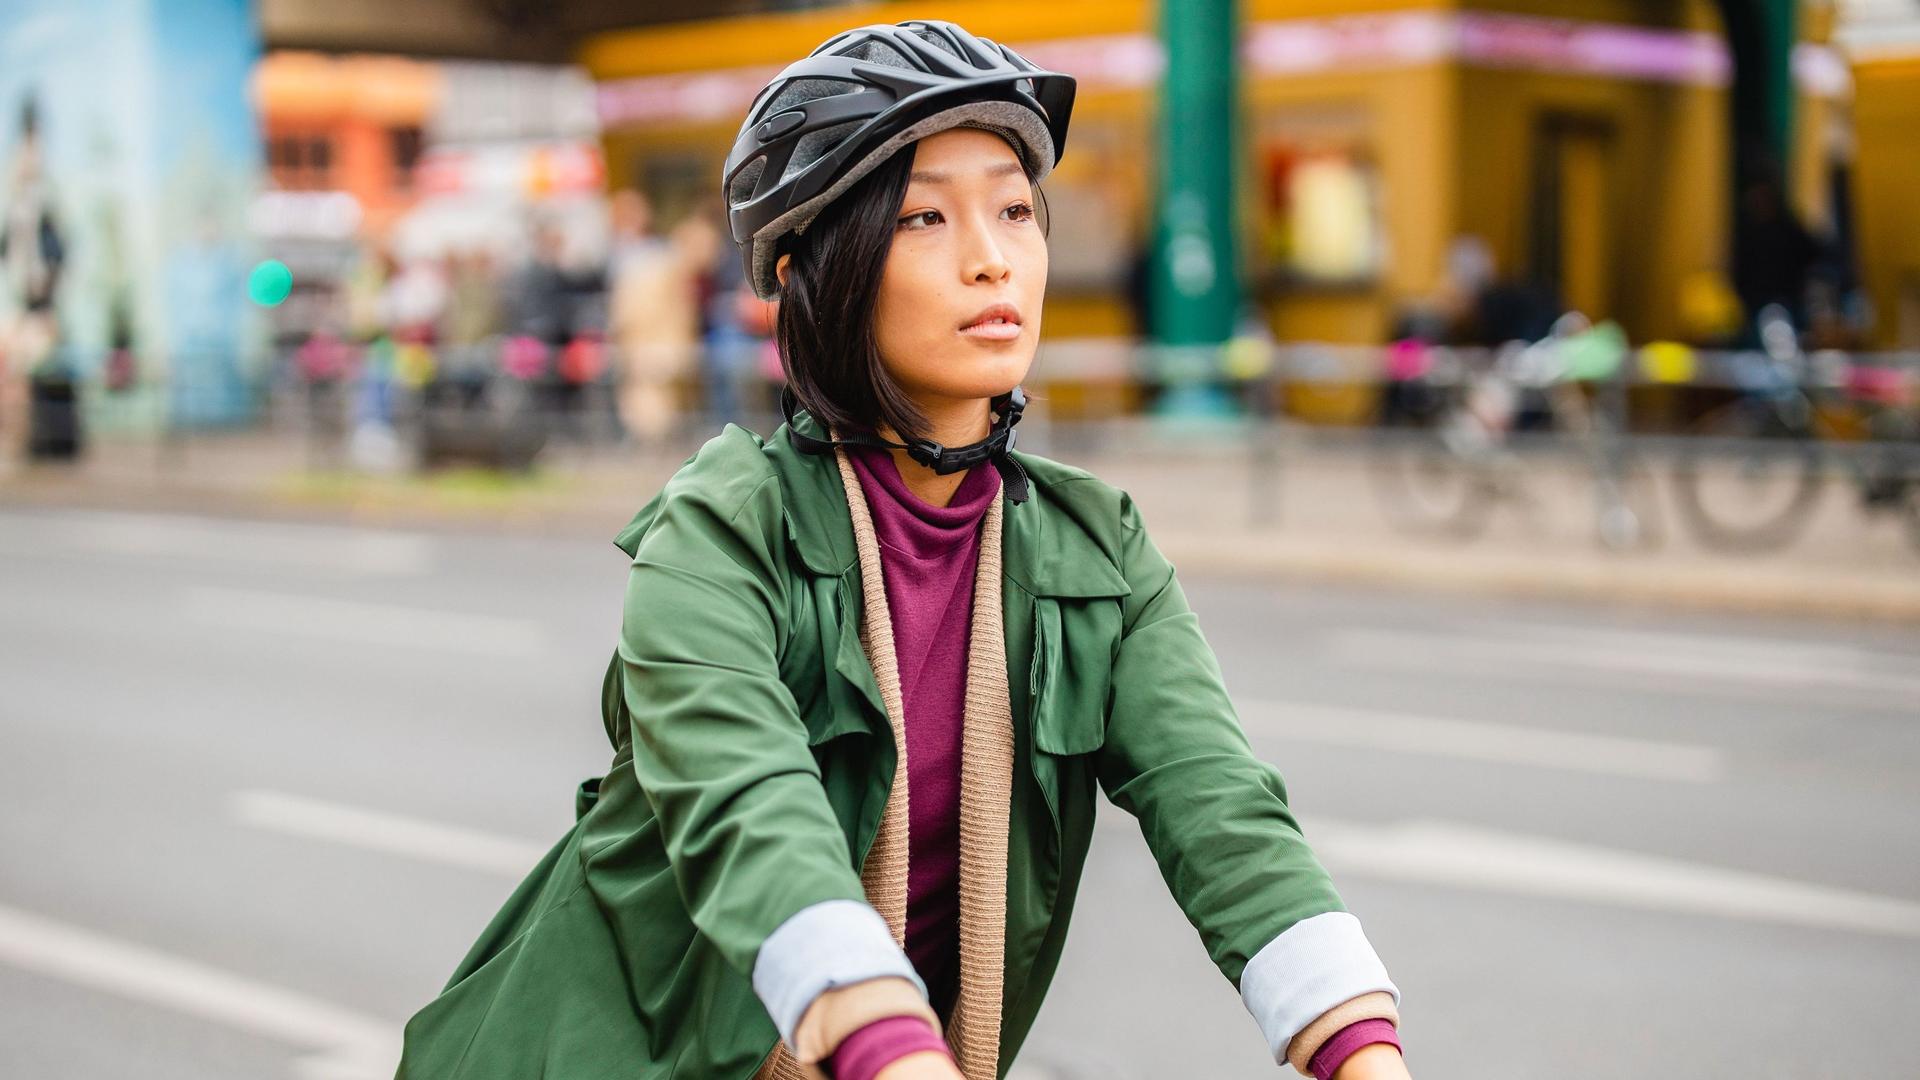 Eine Frau fährt in einer Großstadt Fahrrad. Sie trägt einen Fahrradhelm und elegante Kleidung.